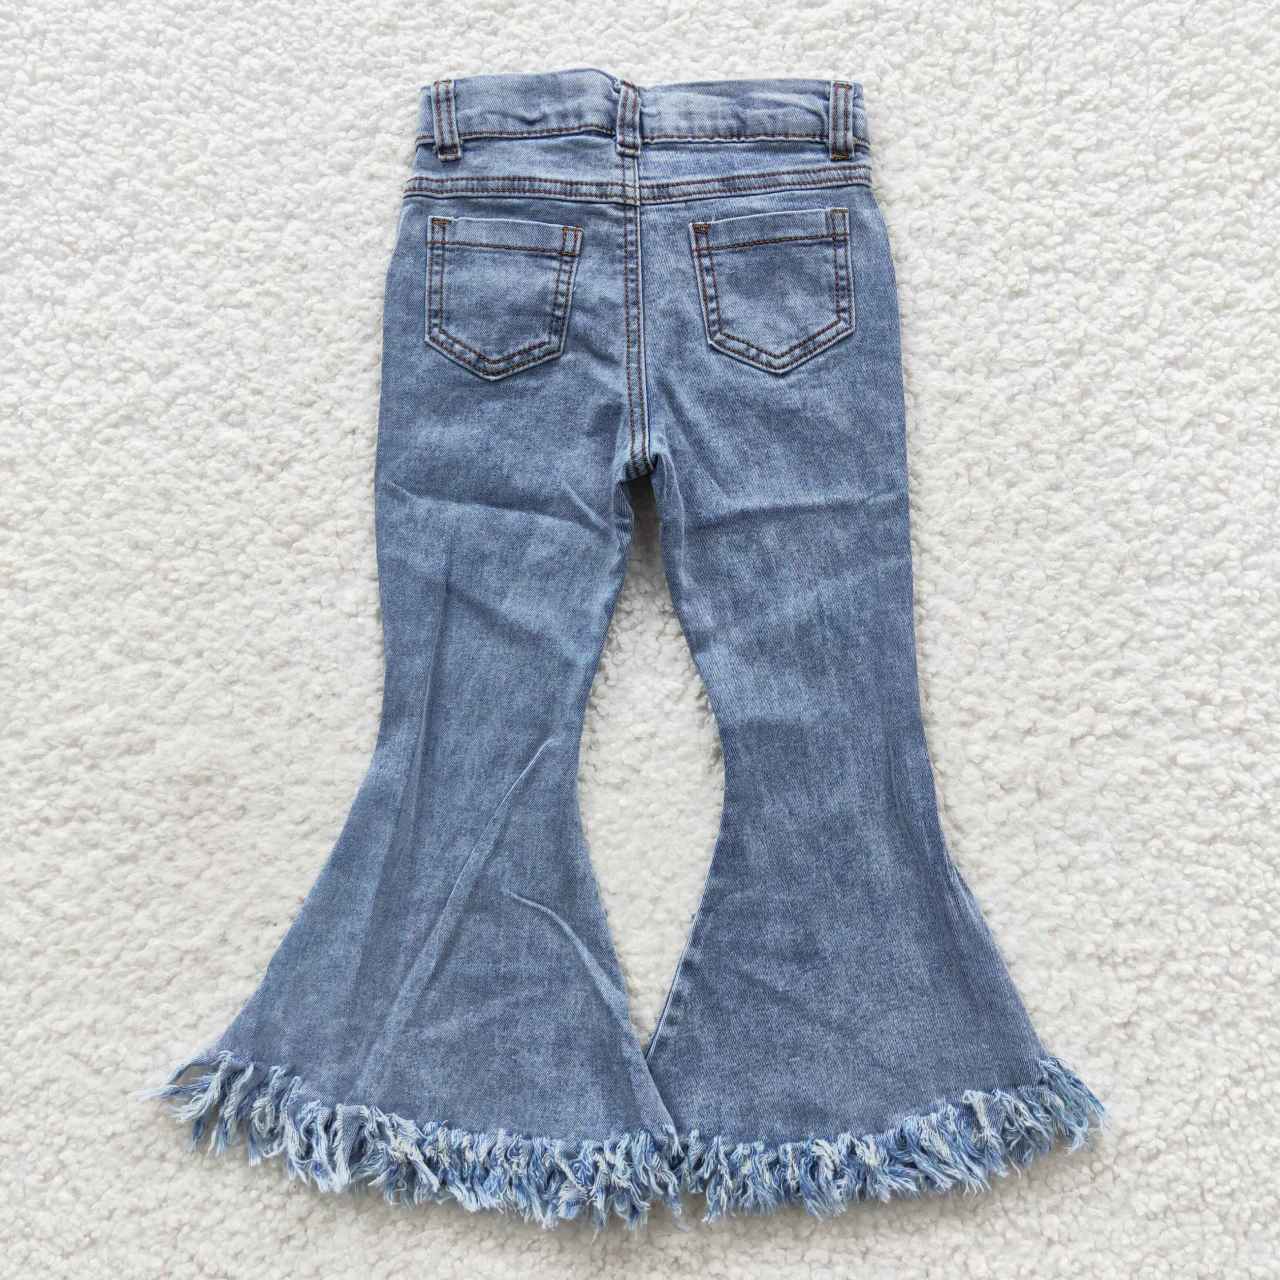 P0132 Girls blue tassels denim bell bottom jeans